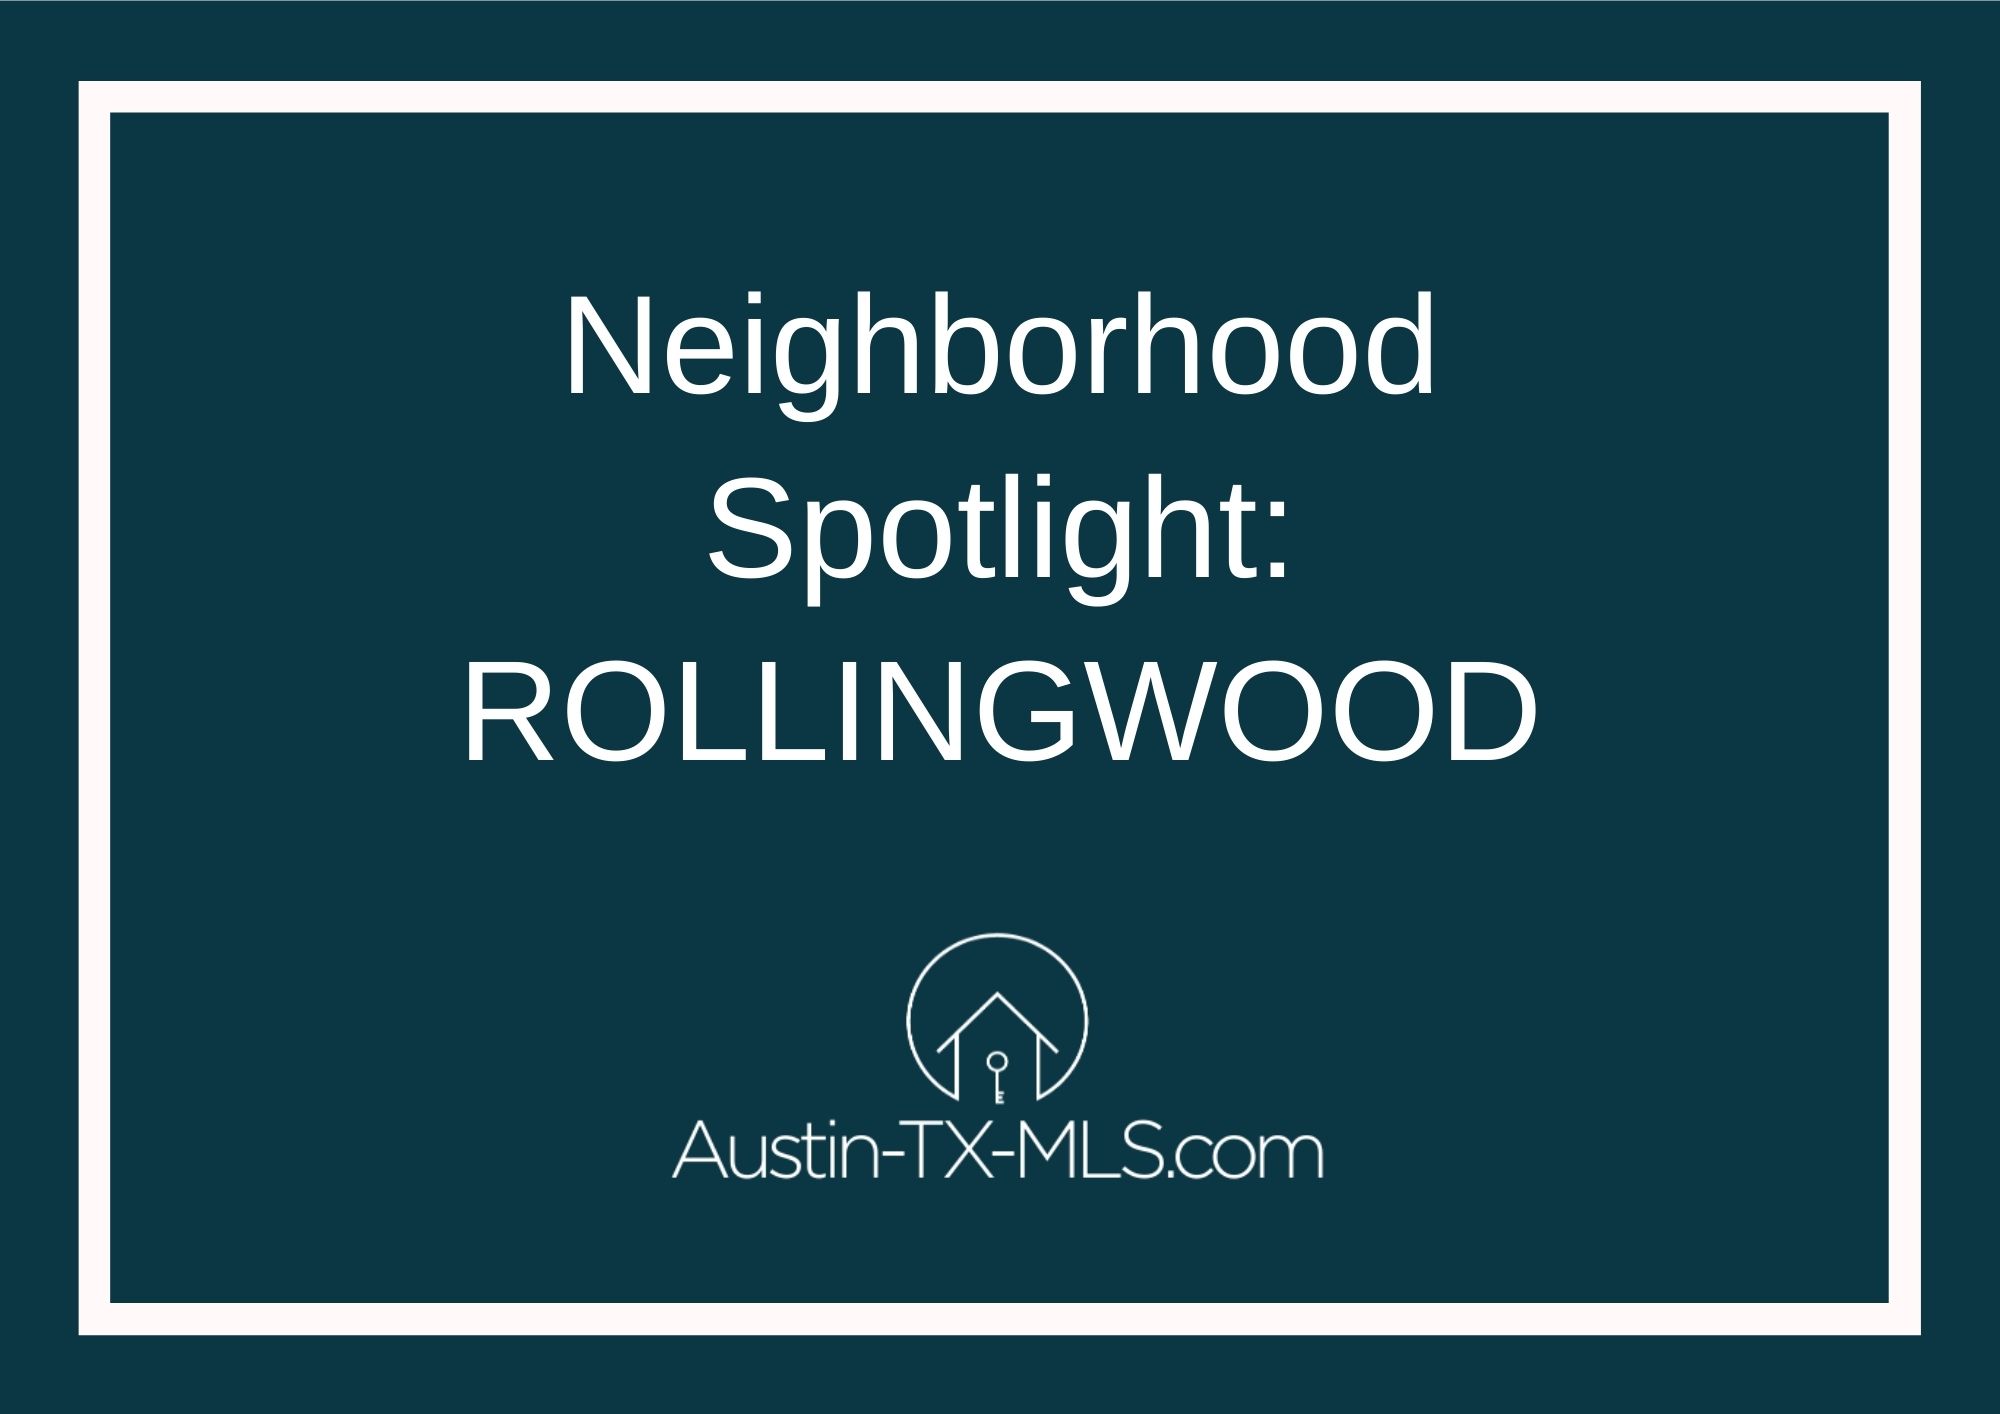 Rollingwood Neighborhood Spotlight Austin Texas real estate